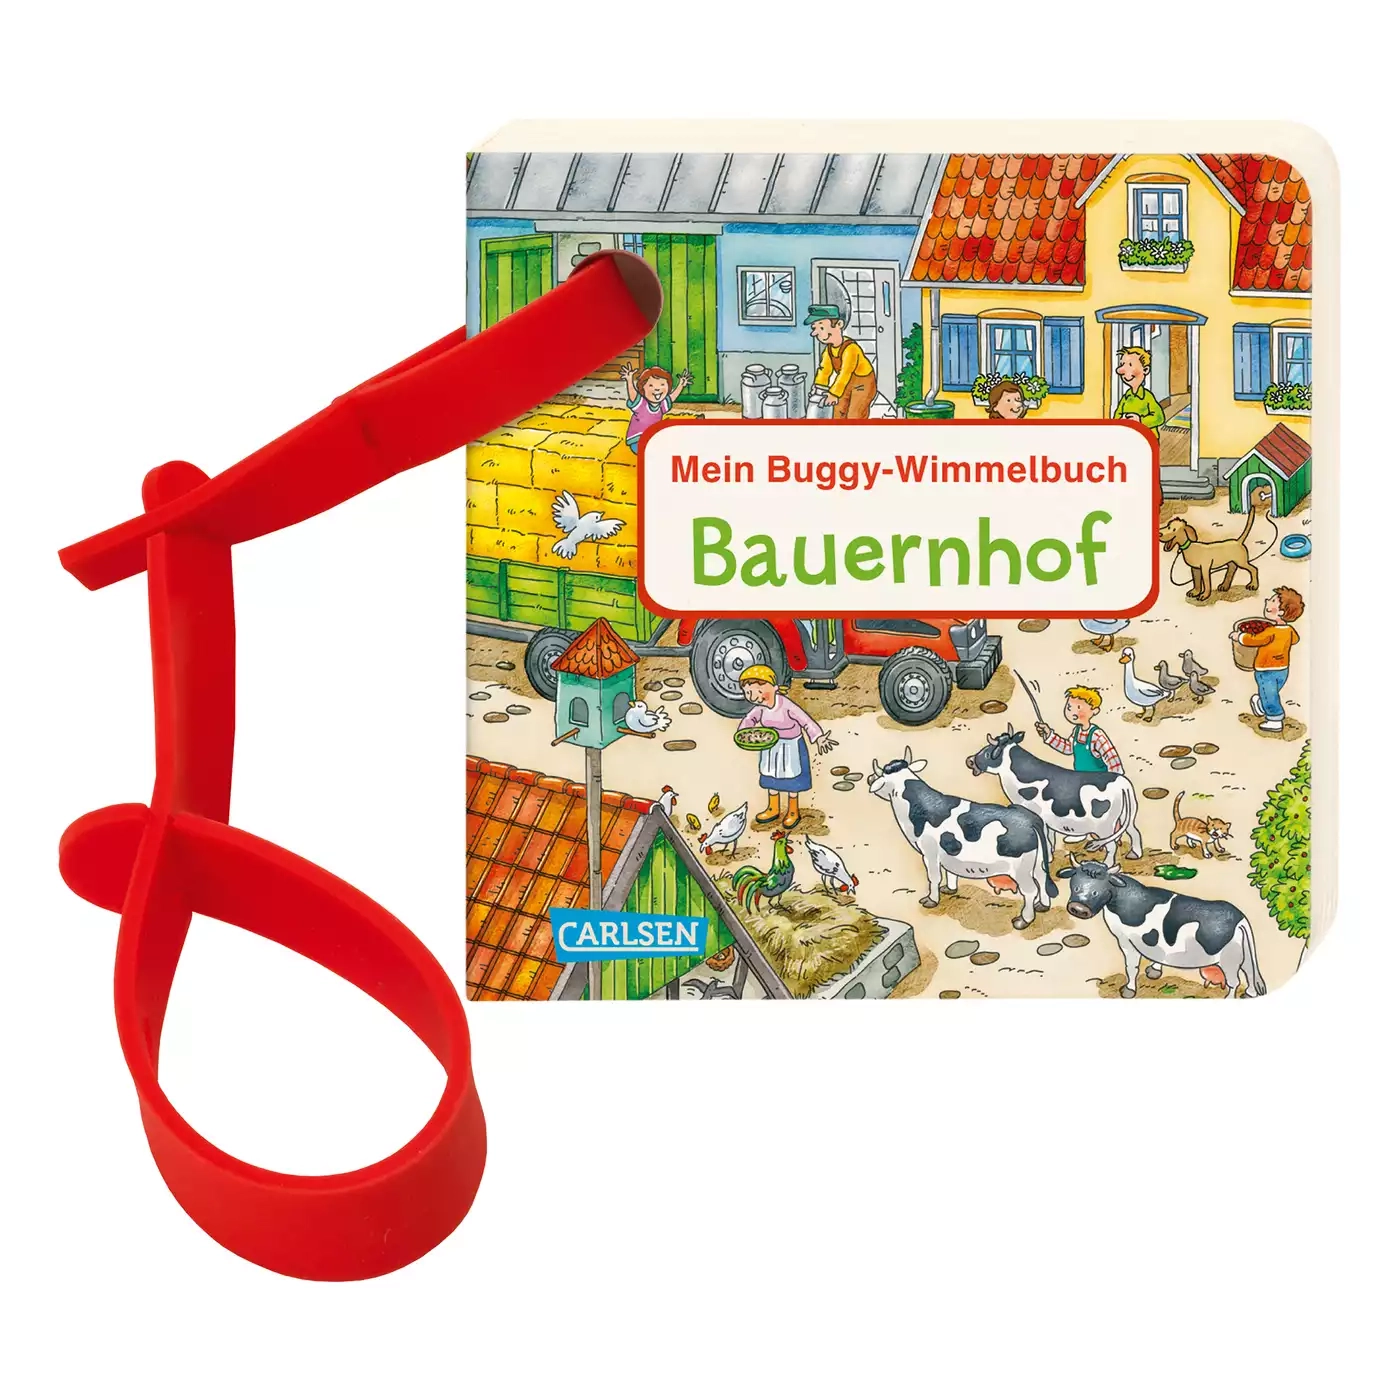 Mein Buggy-Wimmelbuch Bauernhof CARLSEN 2000576422280 1